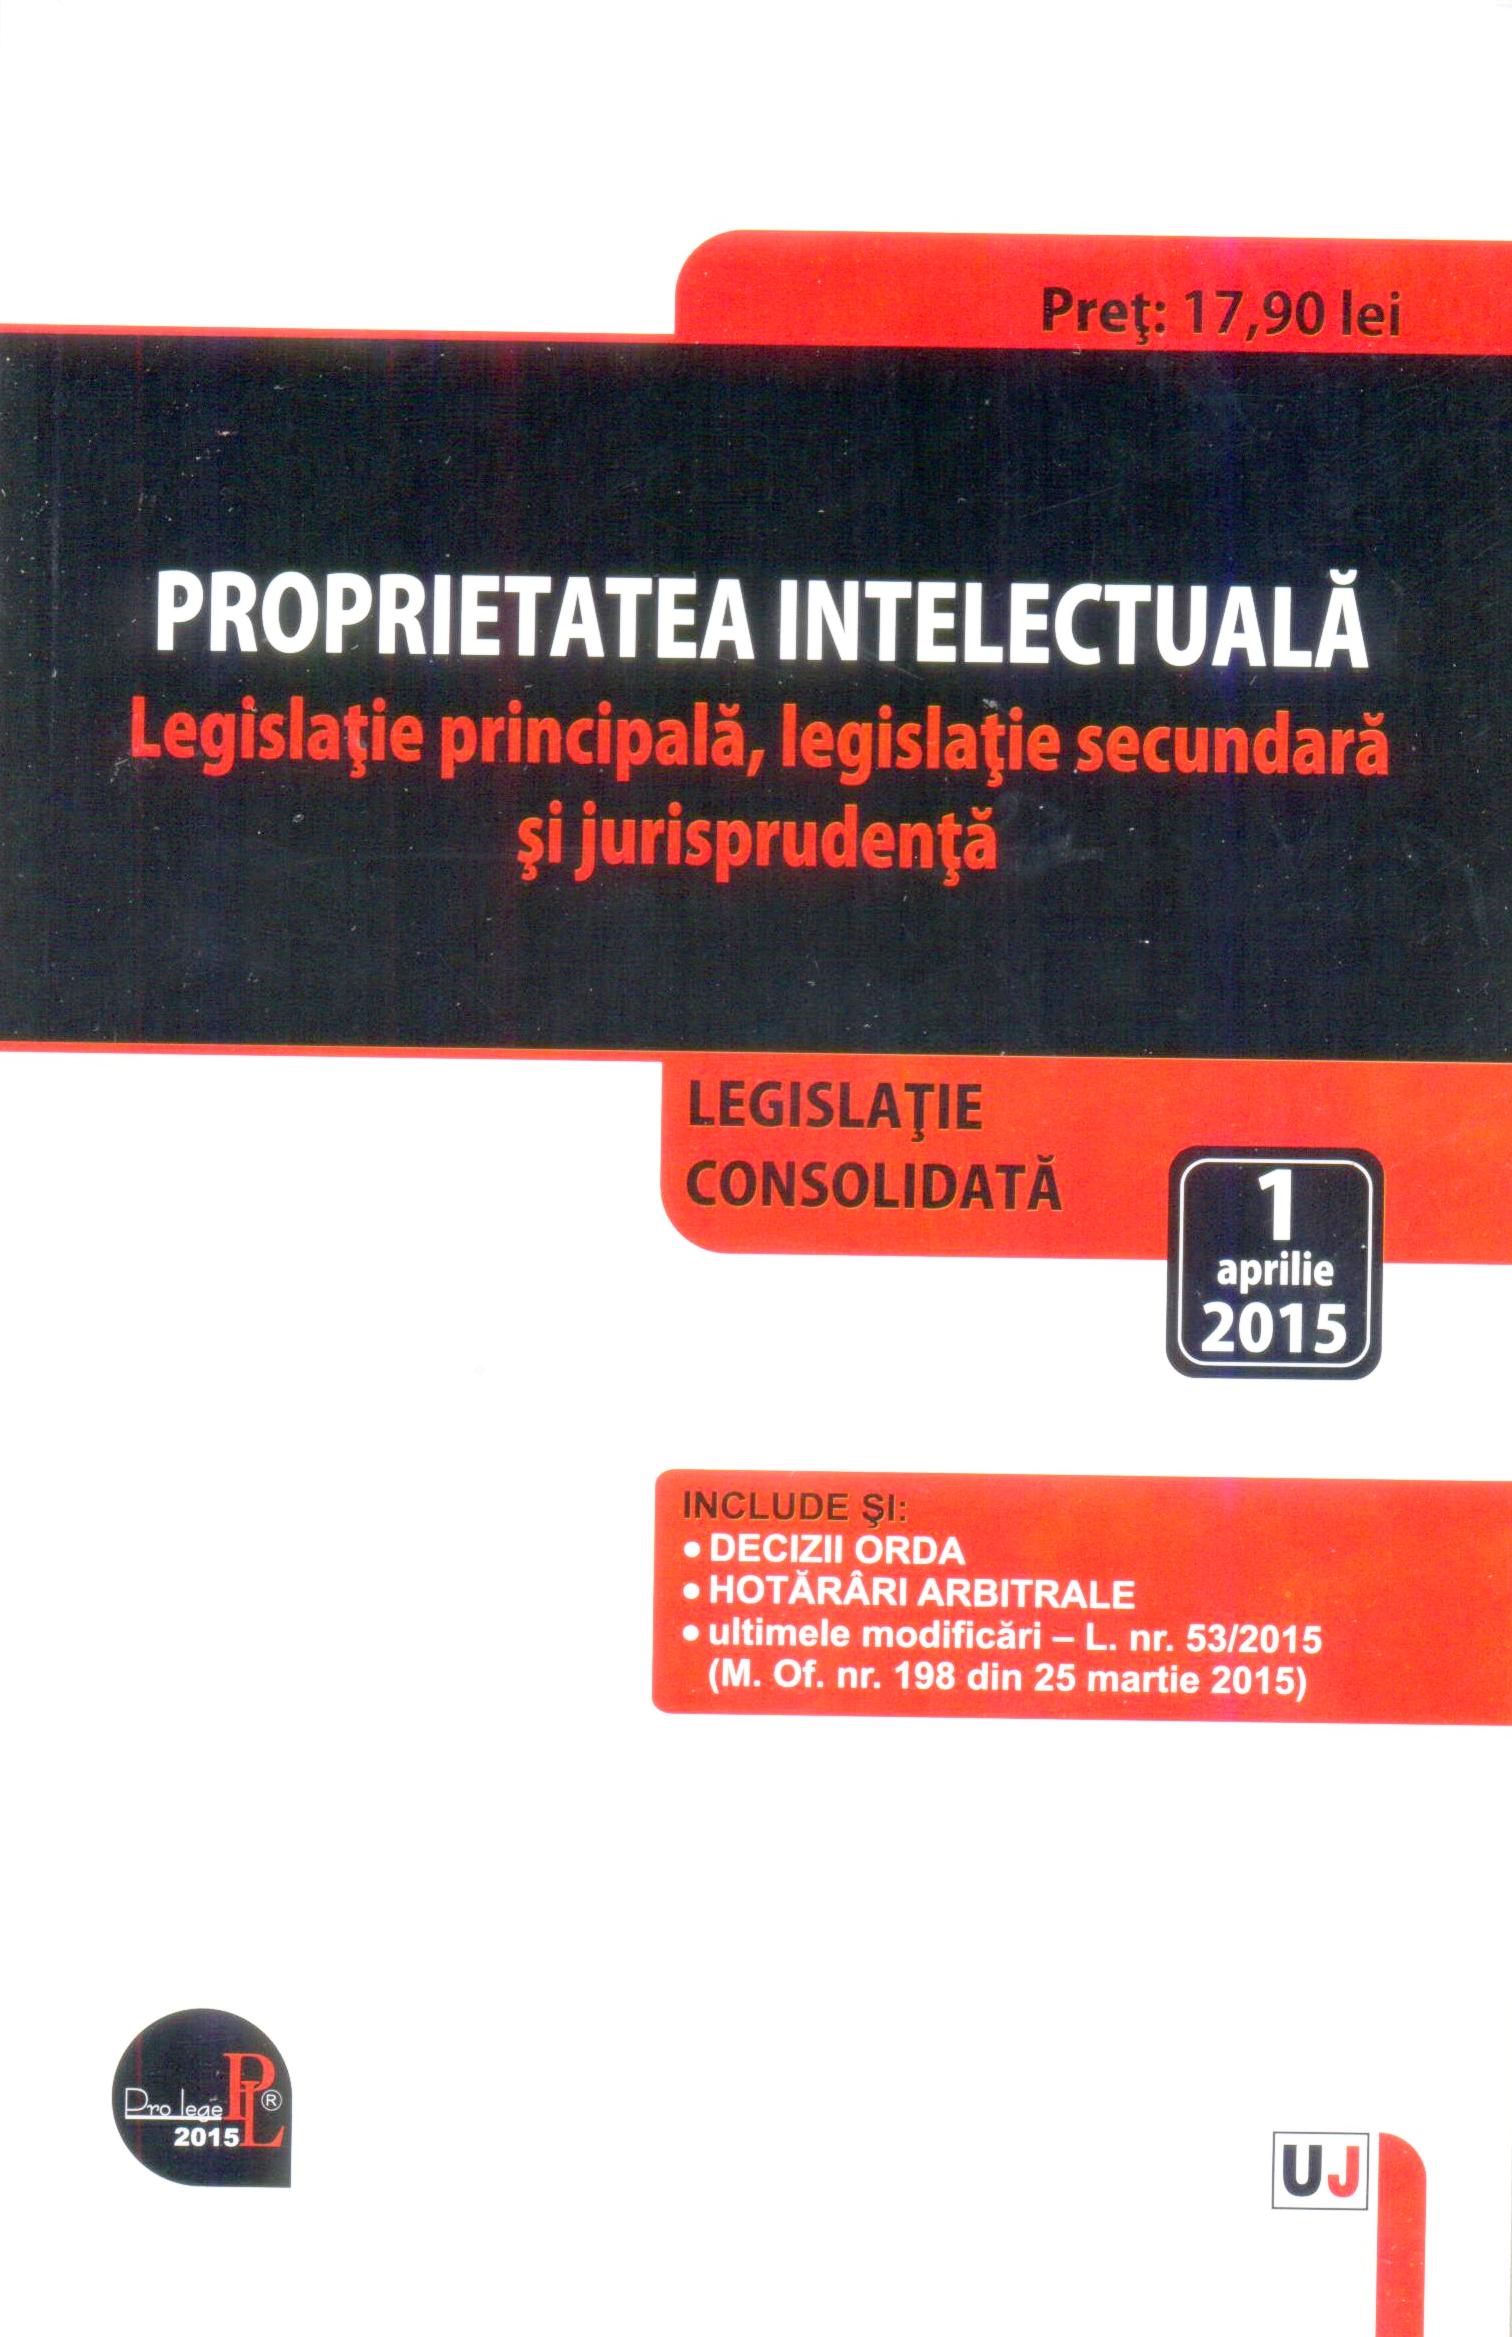 Proprietatea intelectuala. Legislatie principala, legislatie secundara si jurisprudenta. Legislatie consolidata: 1 aprilie 2015